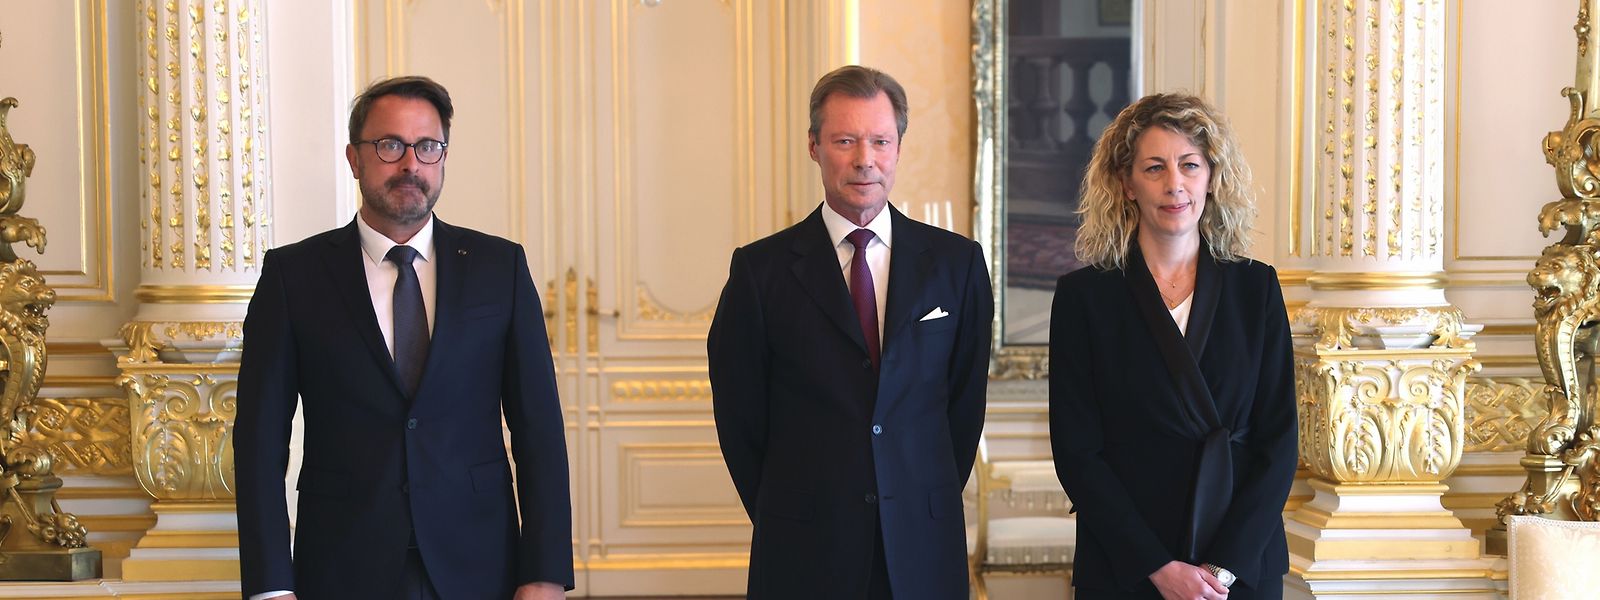 Joëlle Welfring, nouvelle ministre de l'Environnement, a été assermentée par le Grand-Duc.